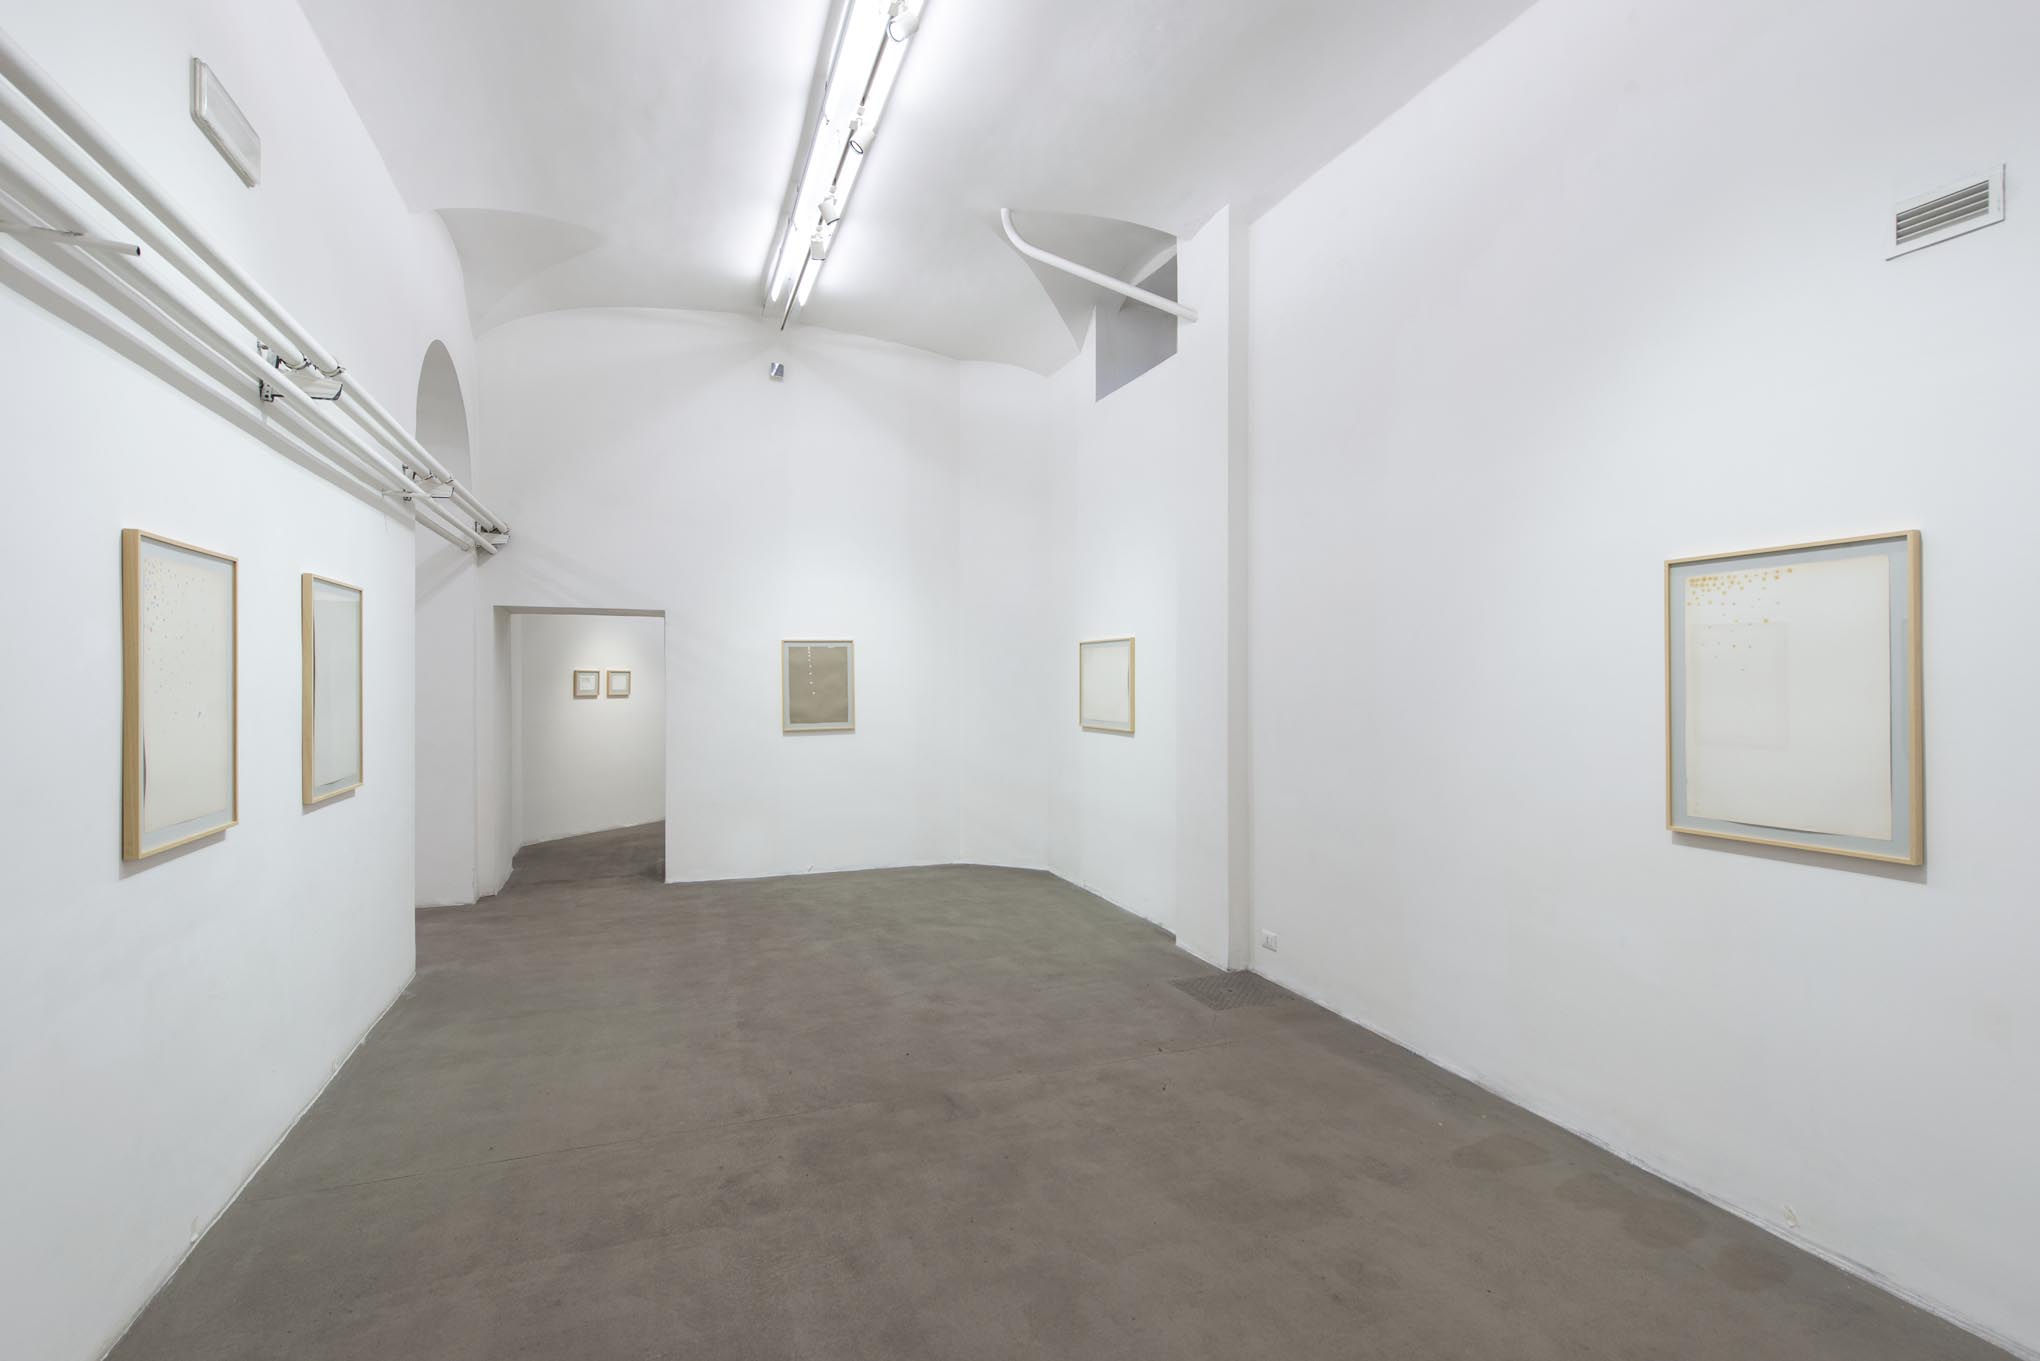 1. Giorgio Griffa: Works on Paper
Installation view, Roma, 2014, foto Giorgio Benni